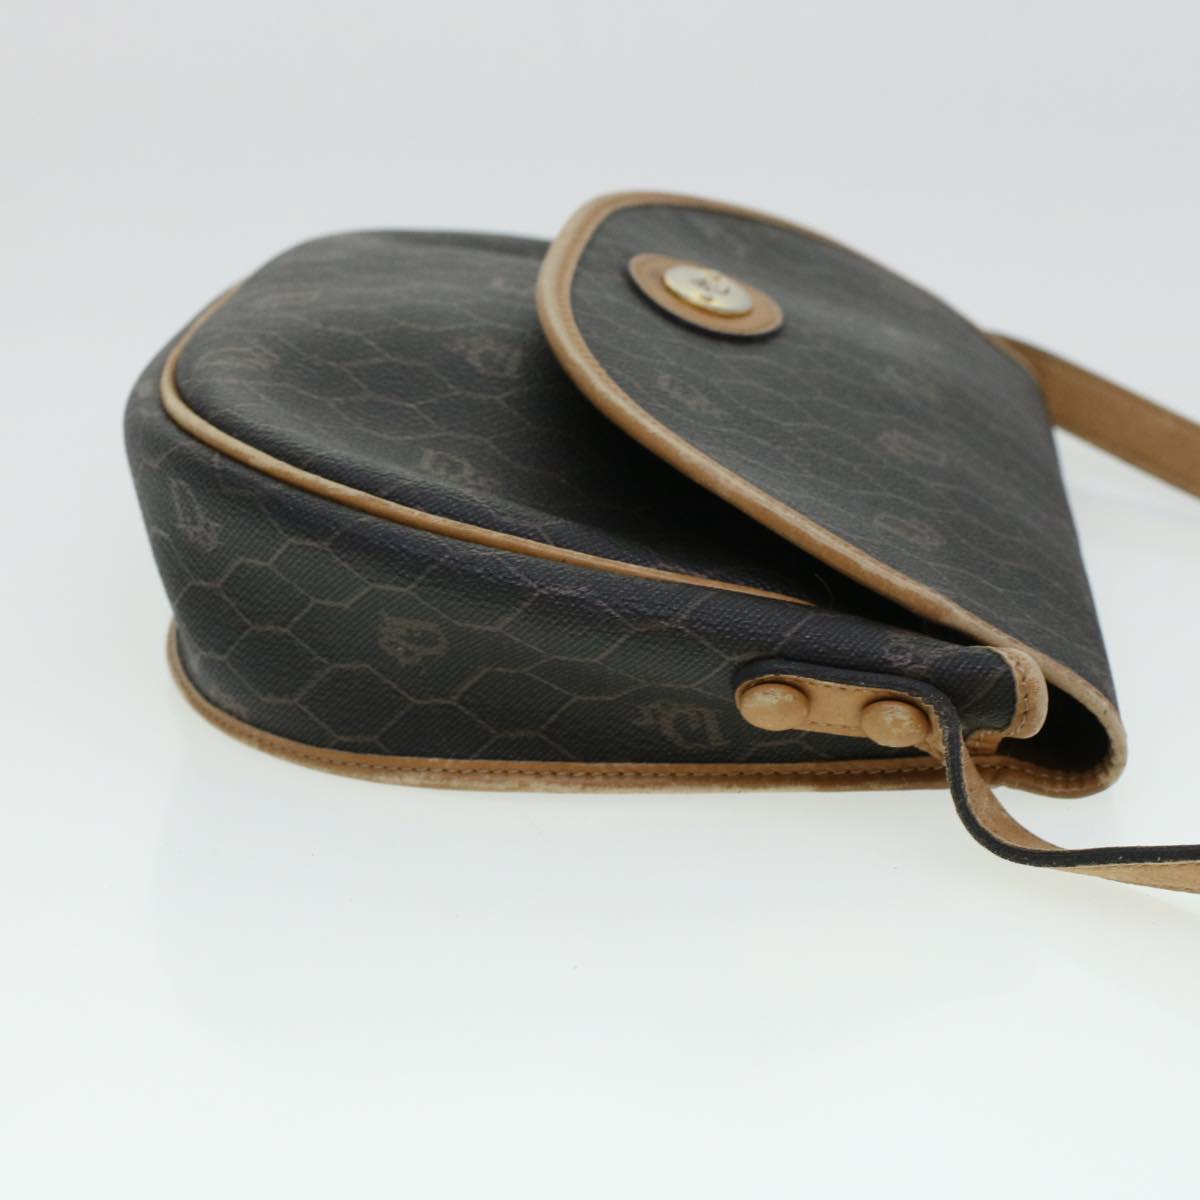 Miu Miu Dior Honeycomb Canvas Shoulder Bag Leather 3Set Black Brown Auth bs5814